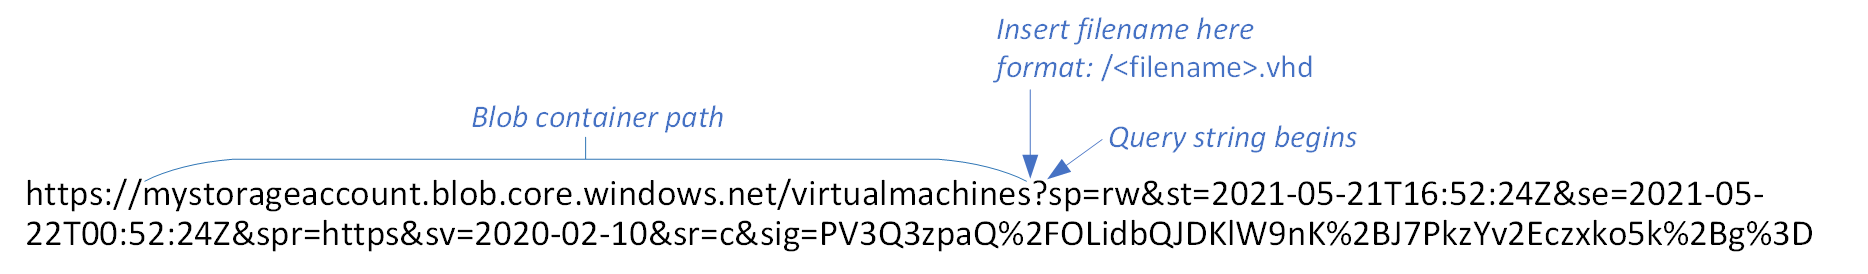 Иллюстрация подписанного URL-адреса BLOB-объекта с указанным путем к контейнеру и местом для вставки нового файла с меткой